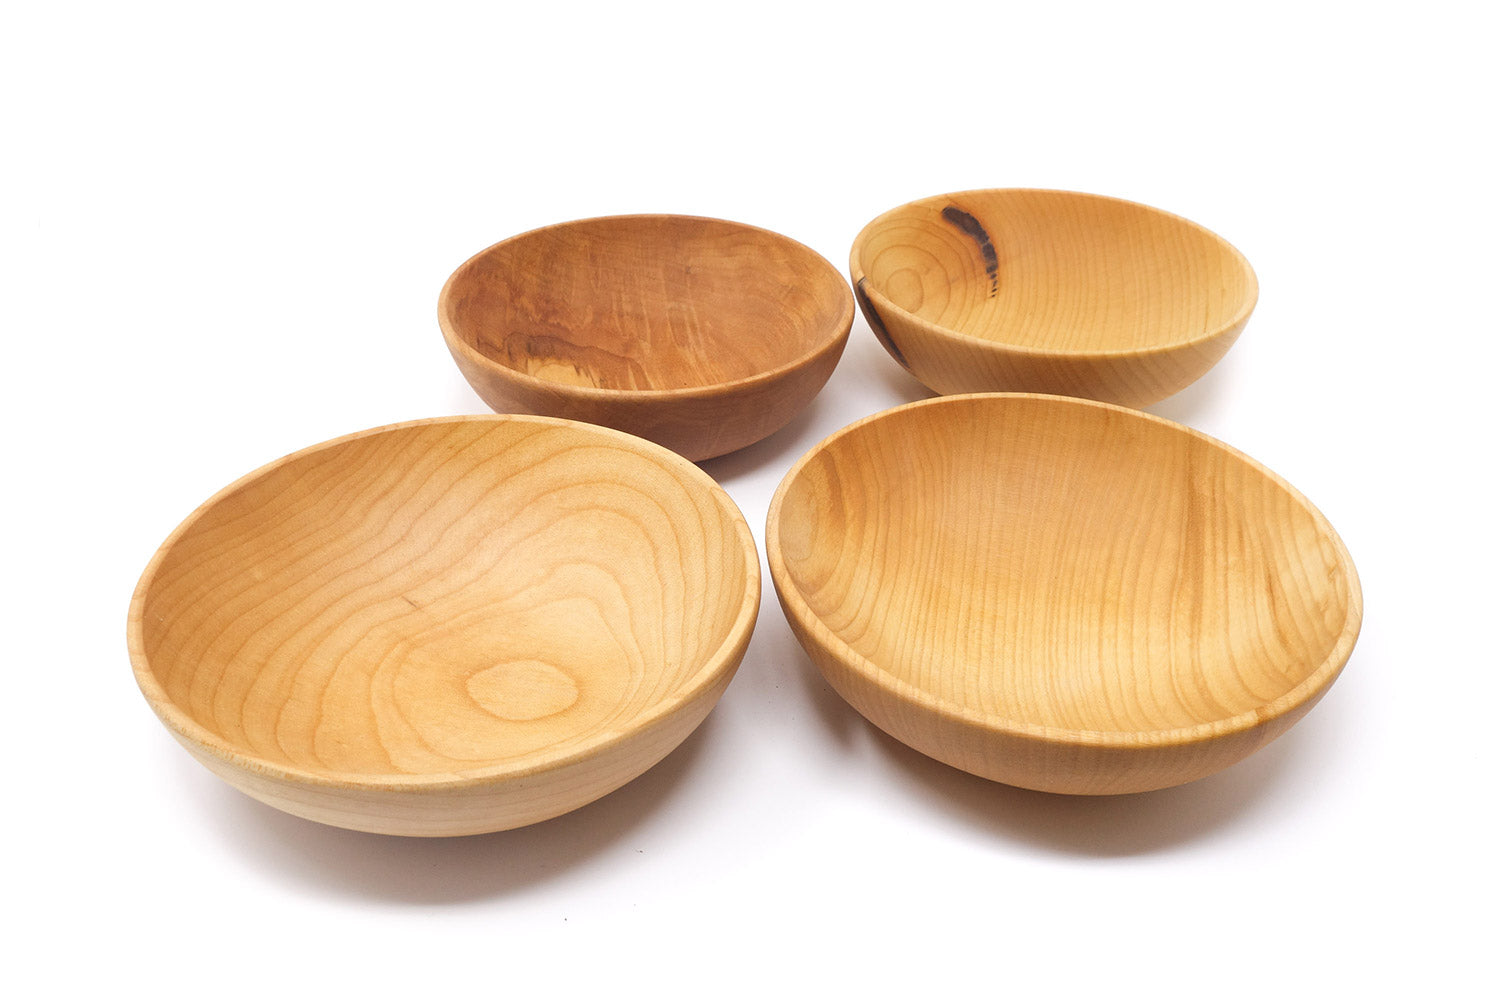 4 wooden salad bowls